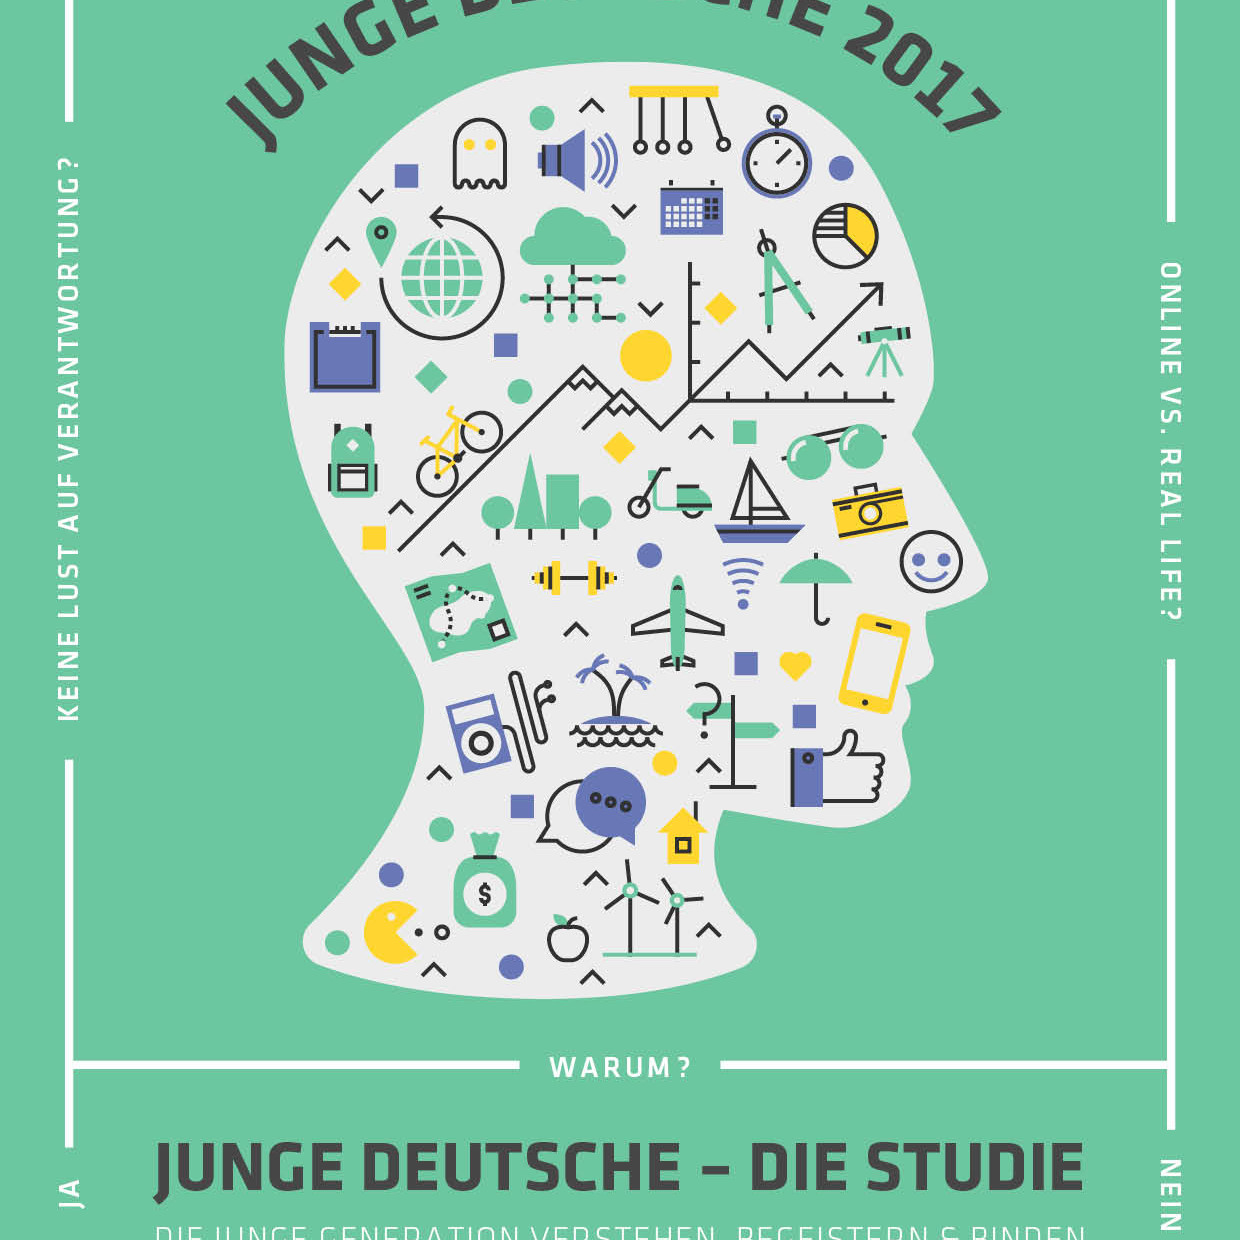 Veröffentlichung Junge Deutsche 2017 - die Lebens- und Arbeitswelten der Generation Y & Z in Deutschland (von Simon Schnetzer)